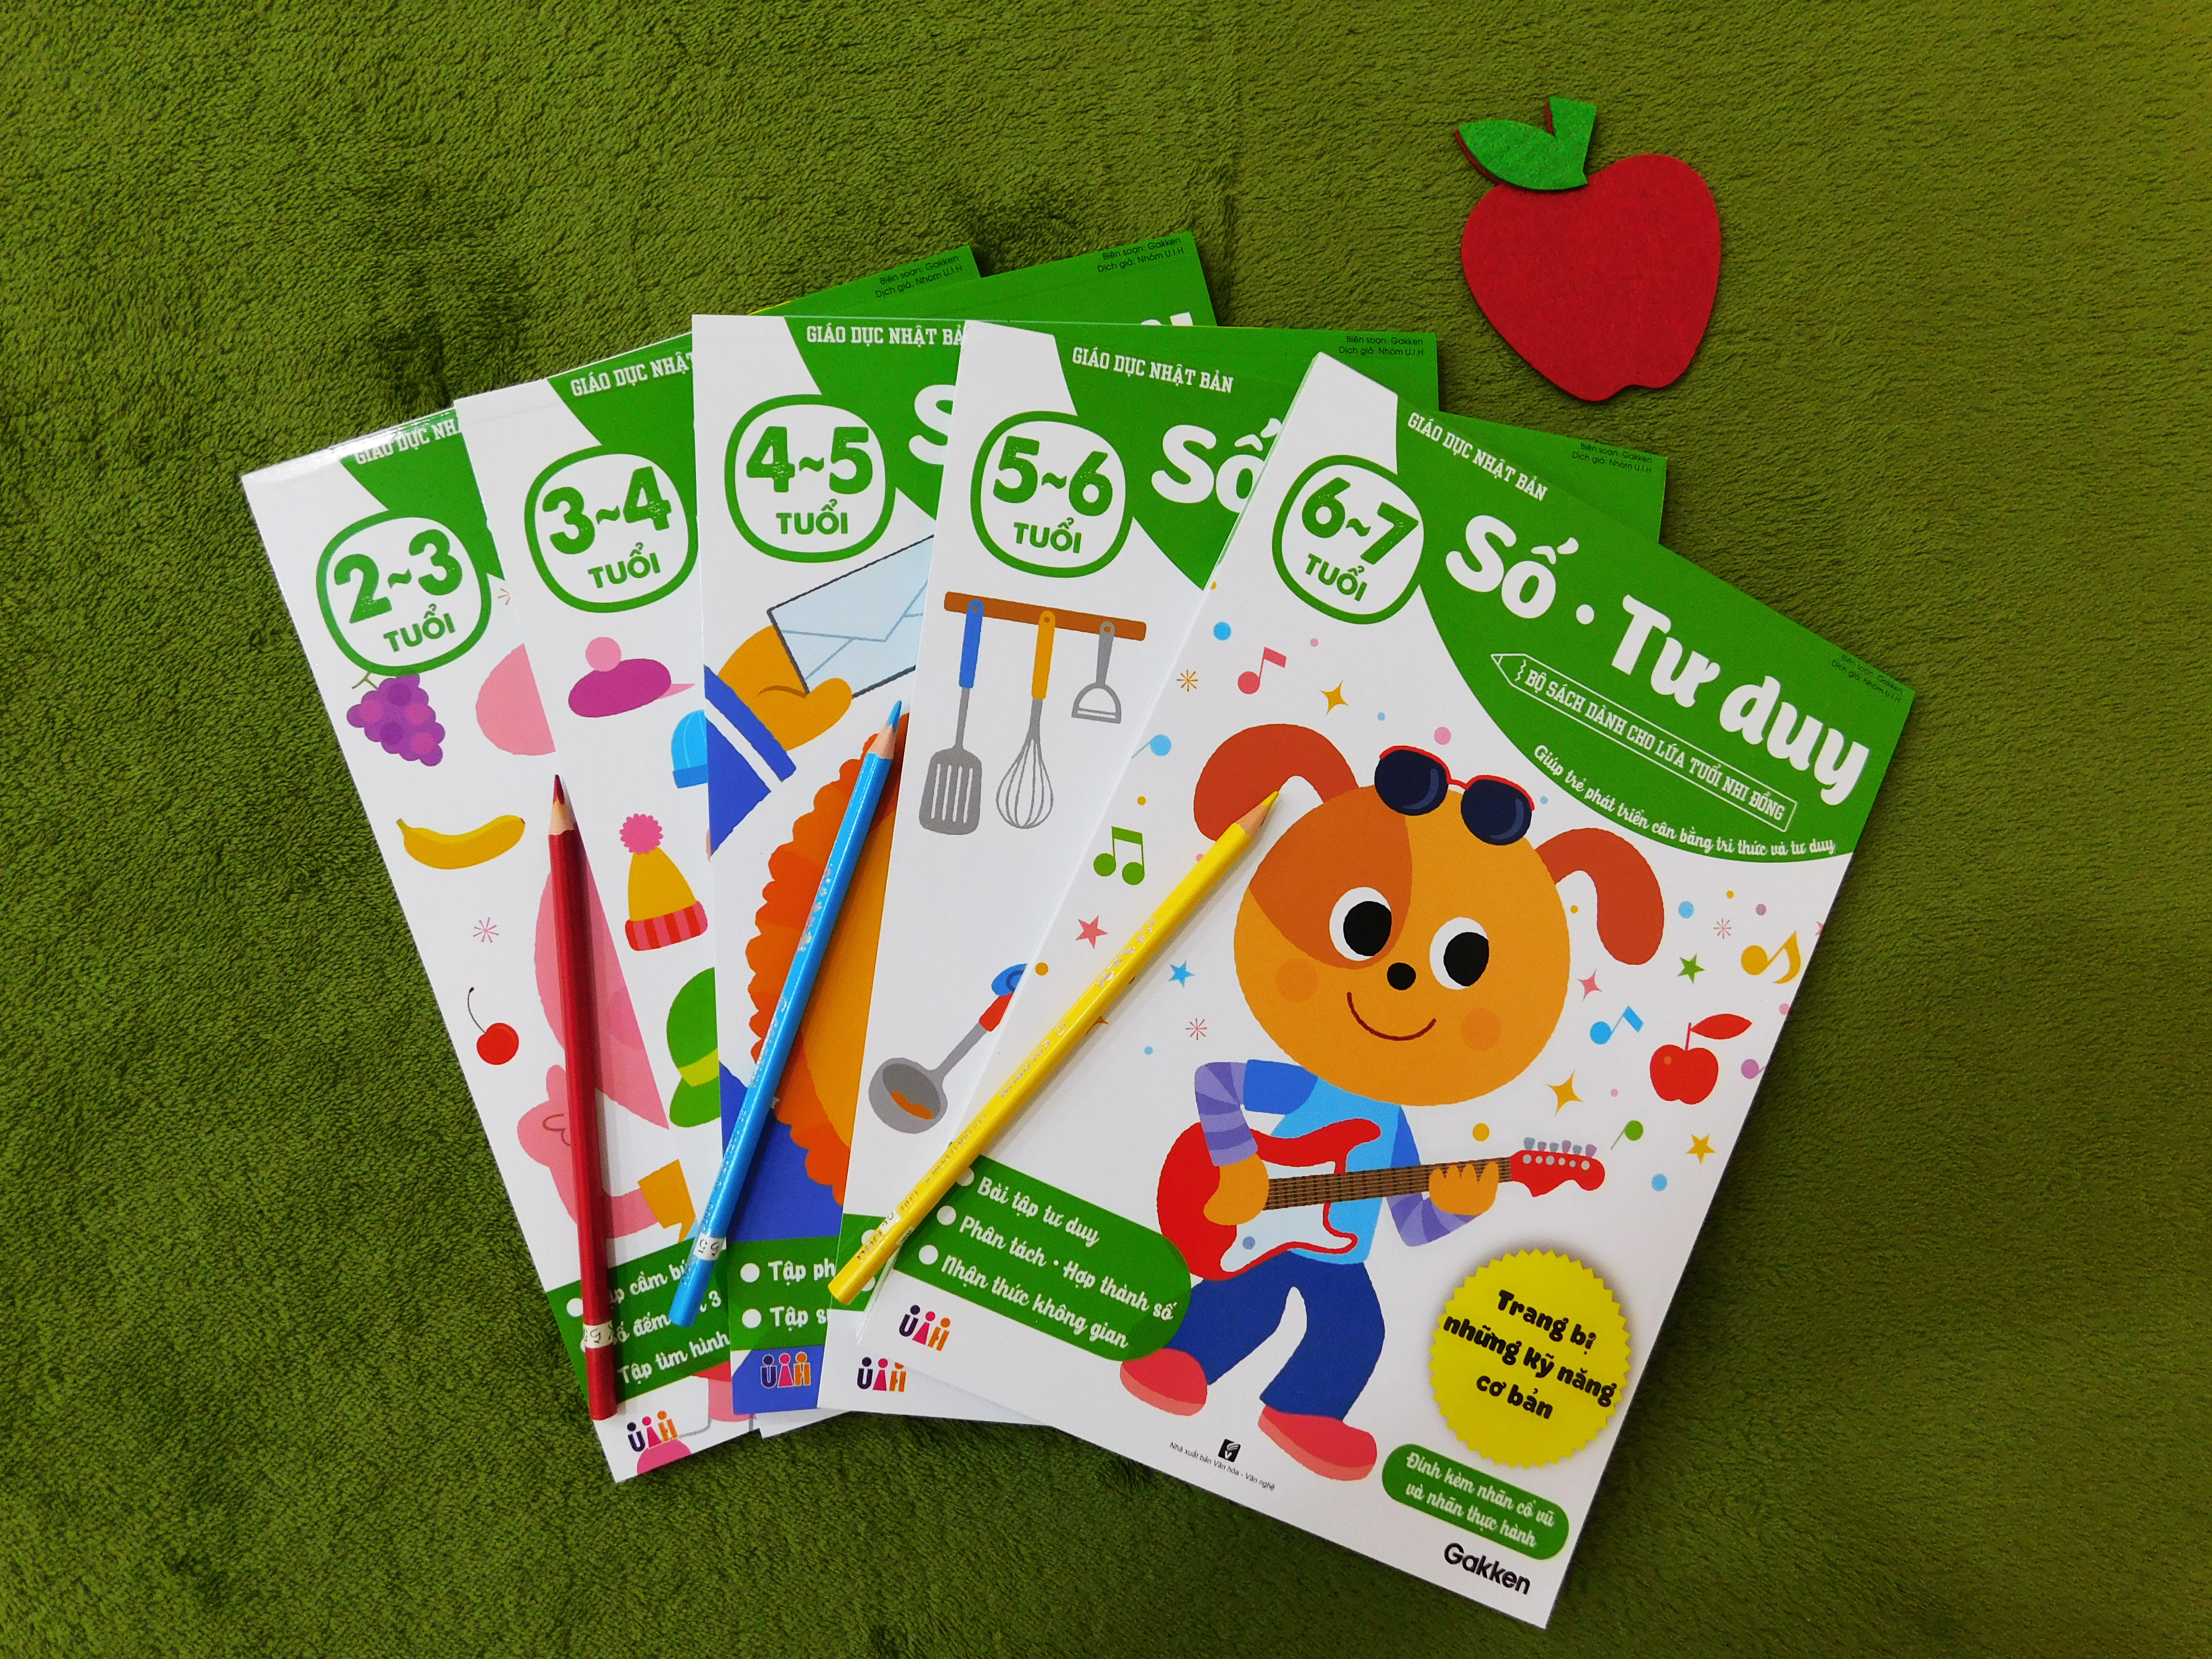 Số - Tư duy (2~3 tuổi) - Giáo dục Nhật Bản - Bộ sách dành cho lứa tuổi nhi đồng - Giúp trẻ phát triển cân bằng tri thức và tư duy